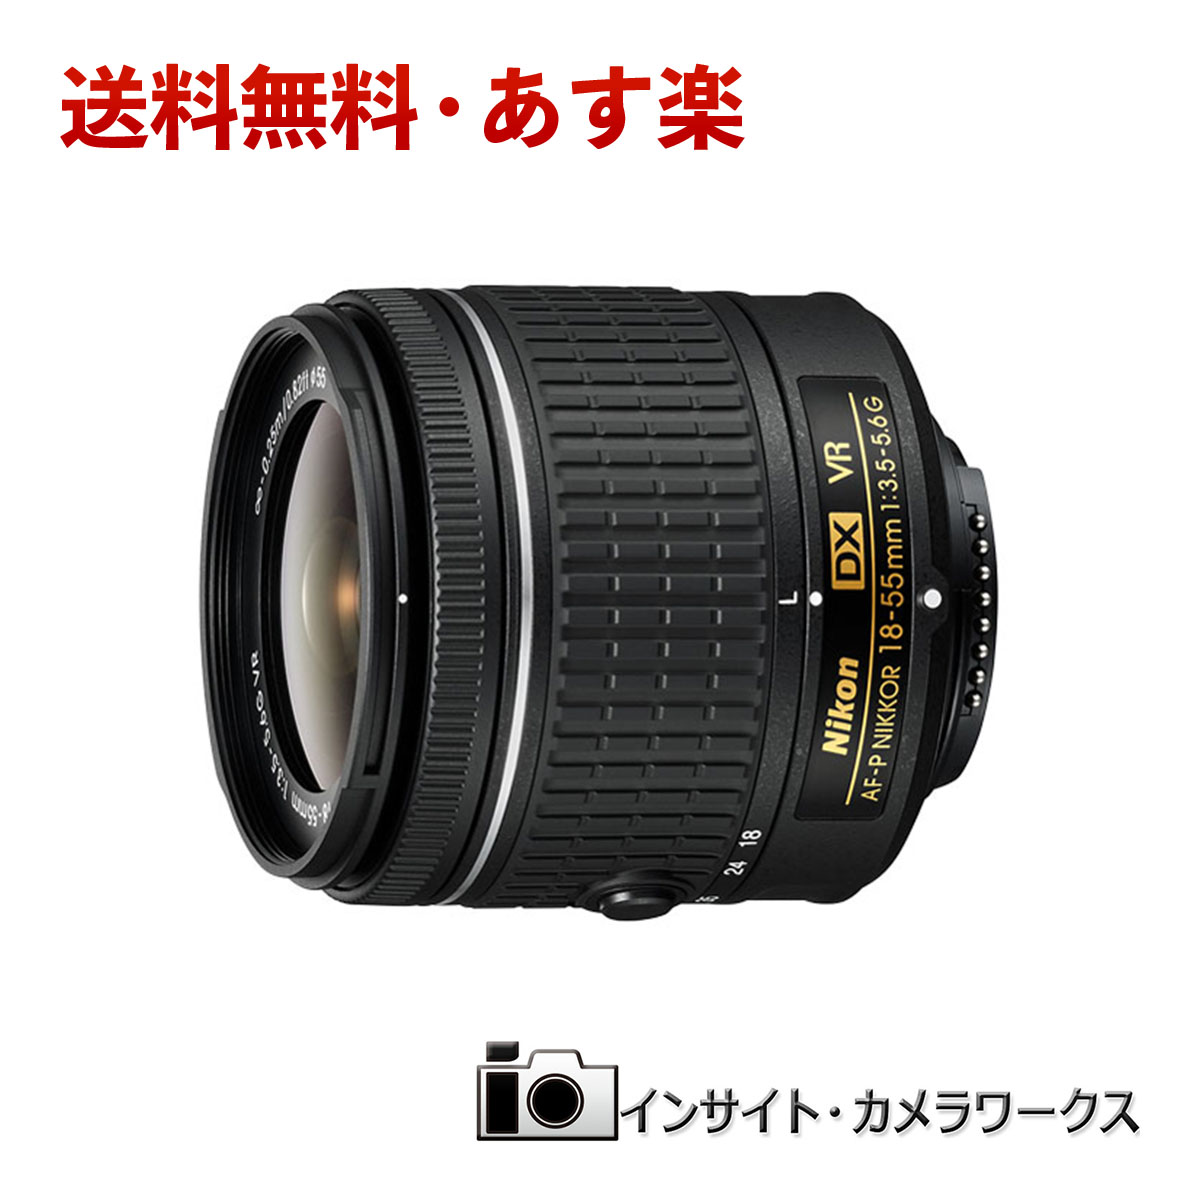 楽天市場 あす楽 Nikon 標準ズームレンズ Af P Dx Nikkor 18 55mm F 3 5 5 6g Vr ニコン Dxフォーマット専用 インサイト カメラワークス